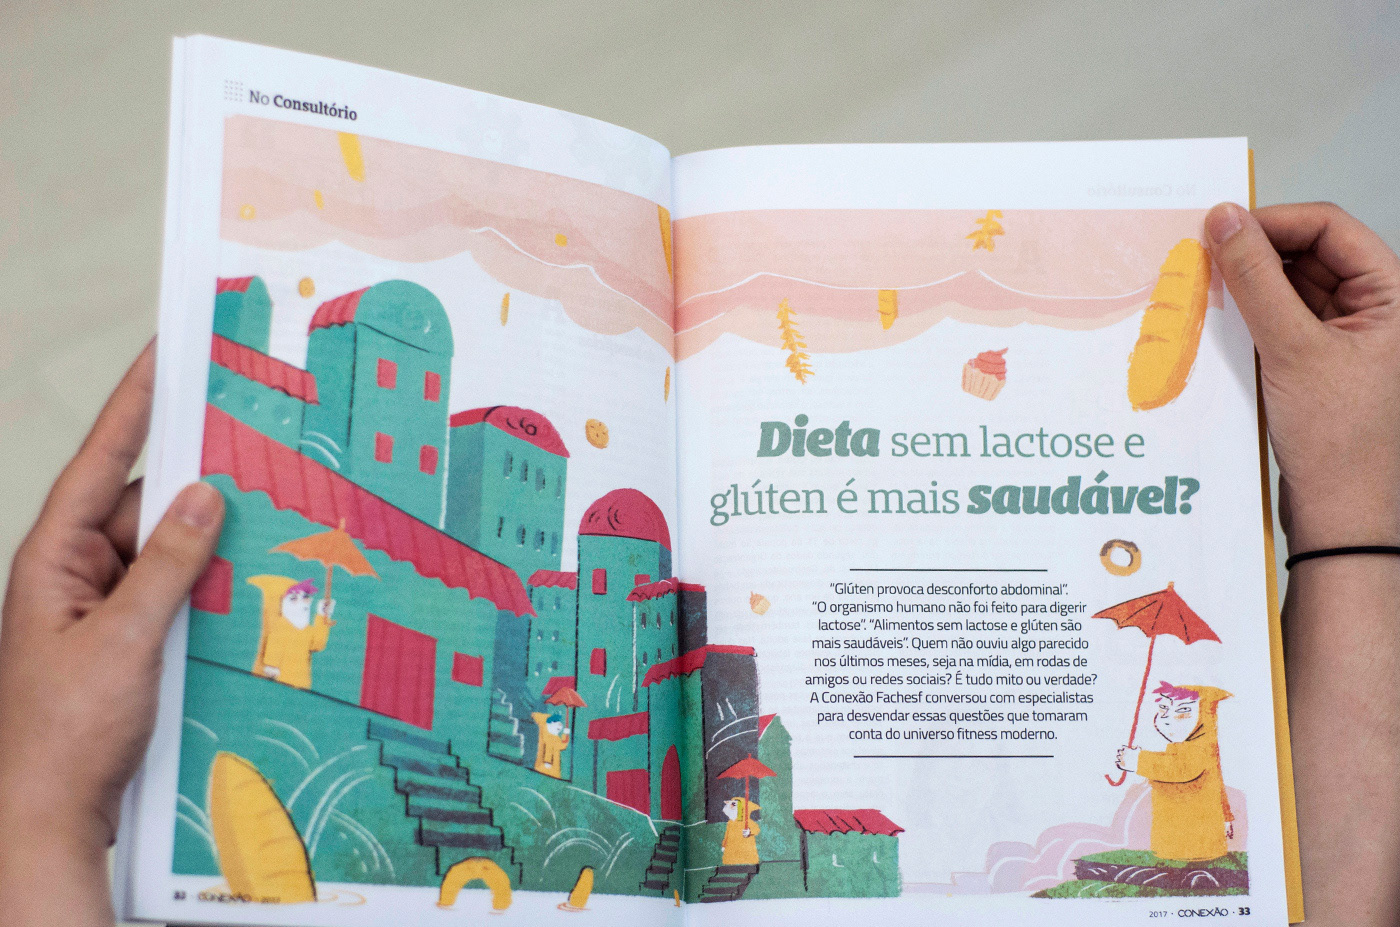 editorial Fachesf conexão fachesf revista magazine mag design ilustras ilustrações